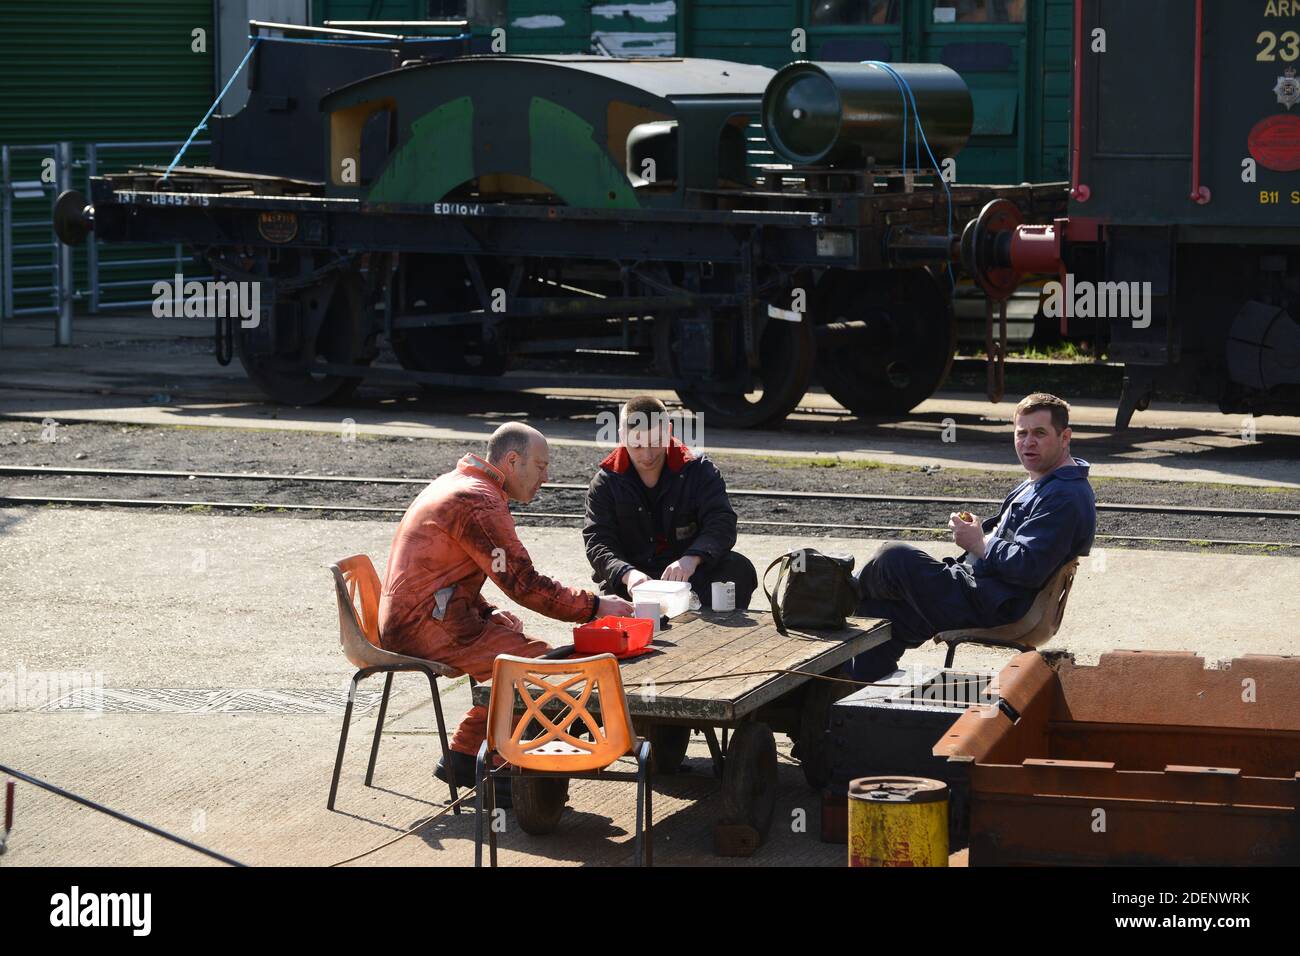 Isle of Wight Steam Railway workers volunteers lunch break Stock Photo